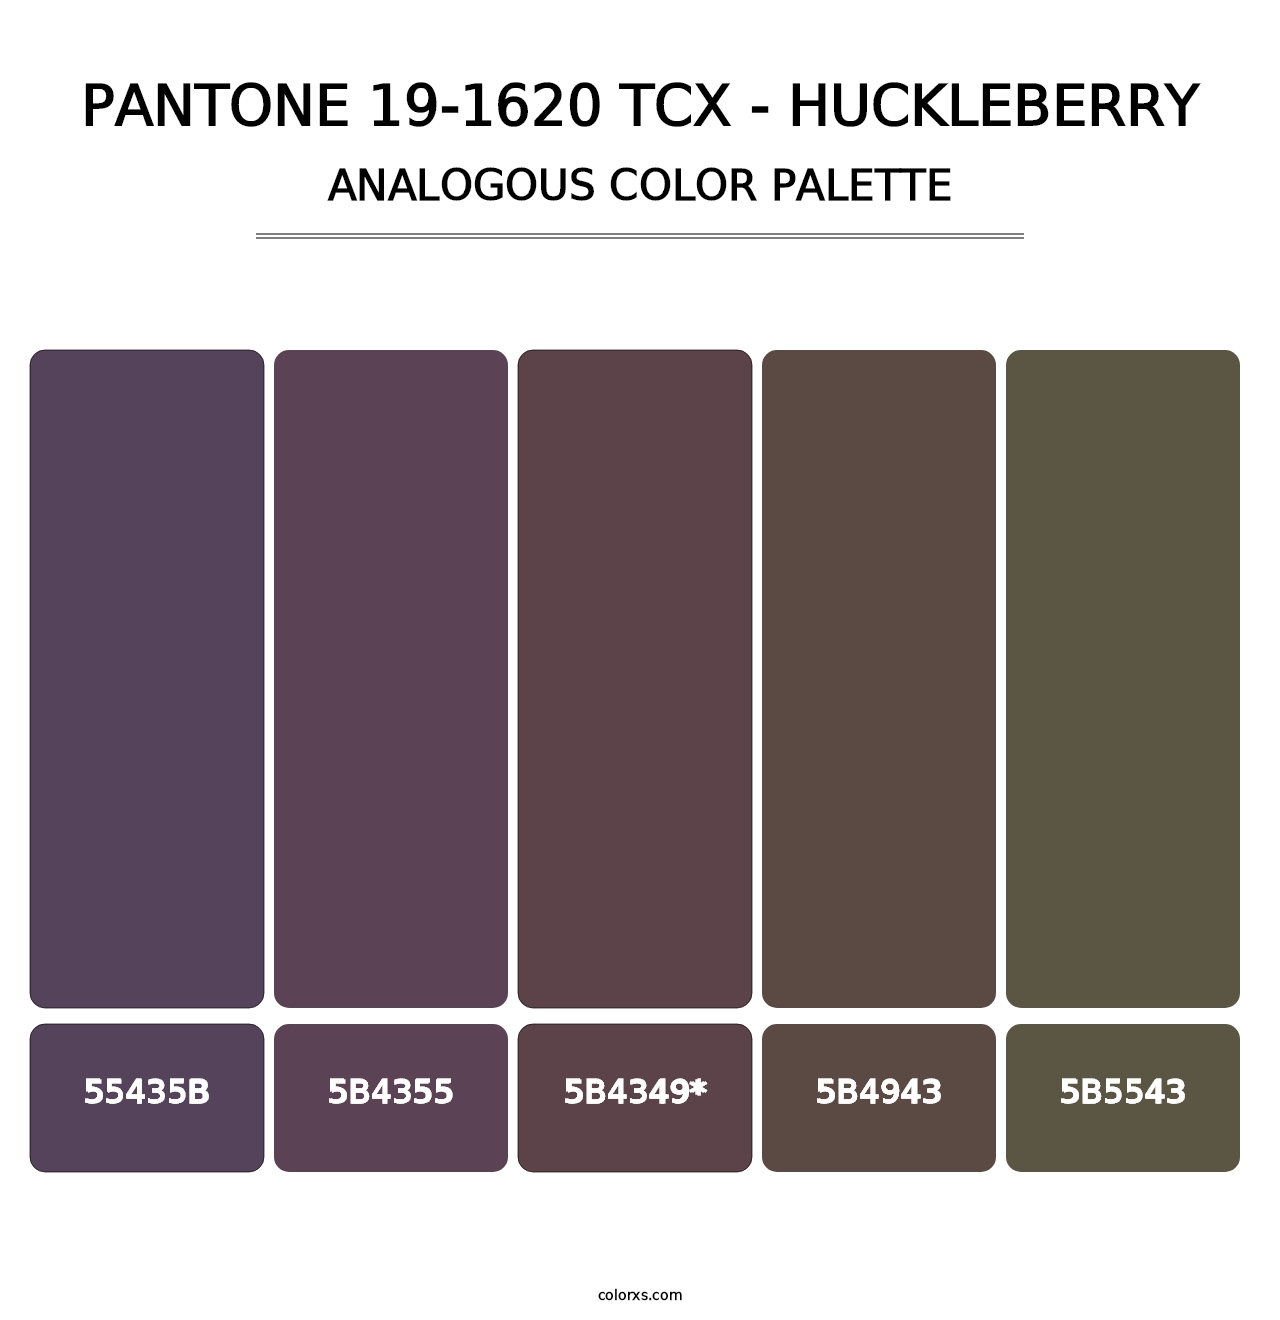 PANTONE 19-1620 TCX - Huckleberry - Analogous Color Palette